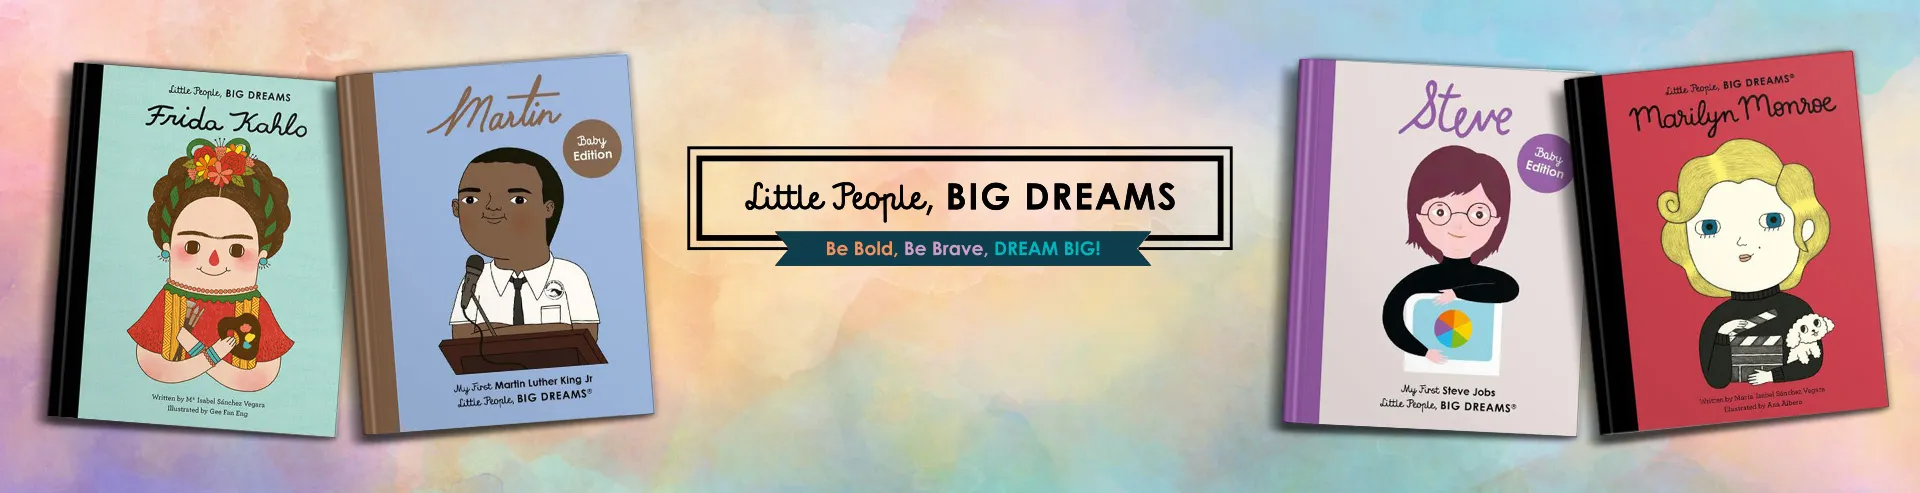 VM-Hero-Little-People-Big-Dreams-1920x493.webp